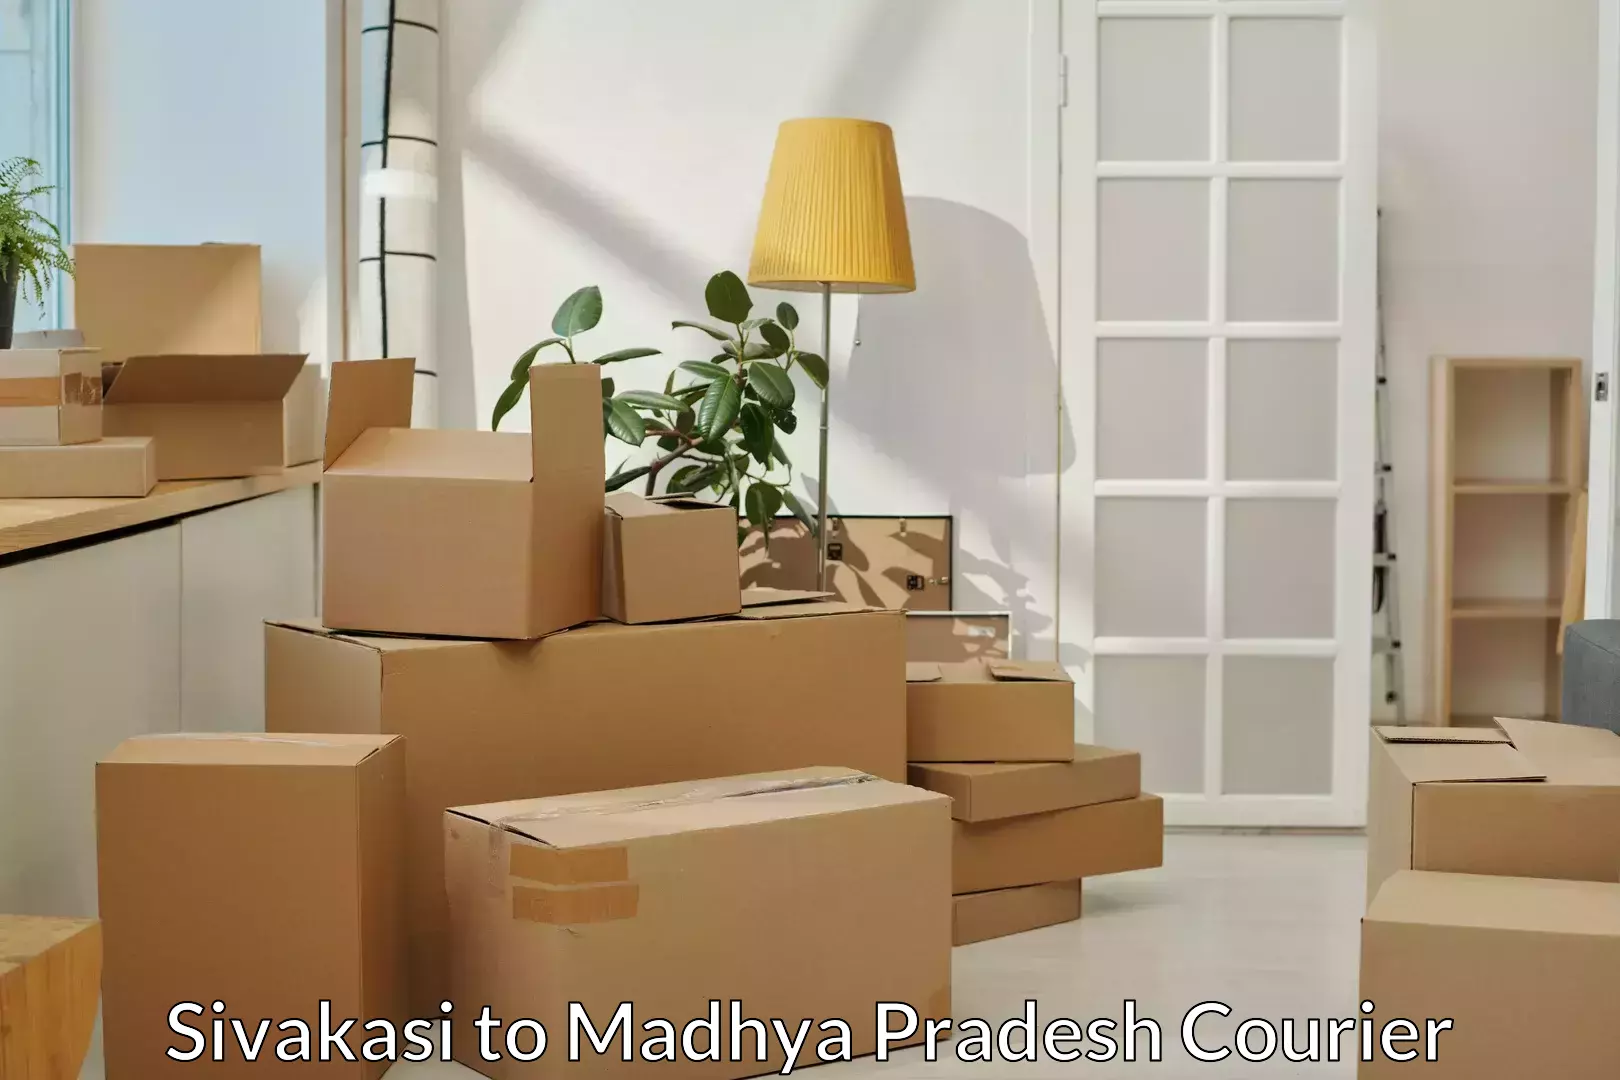 Professional movers and packers Sivakasi to Madhya Pradesh